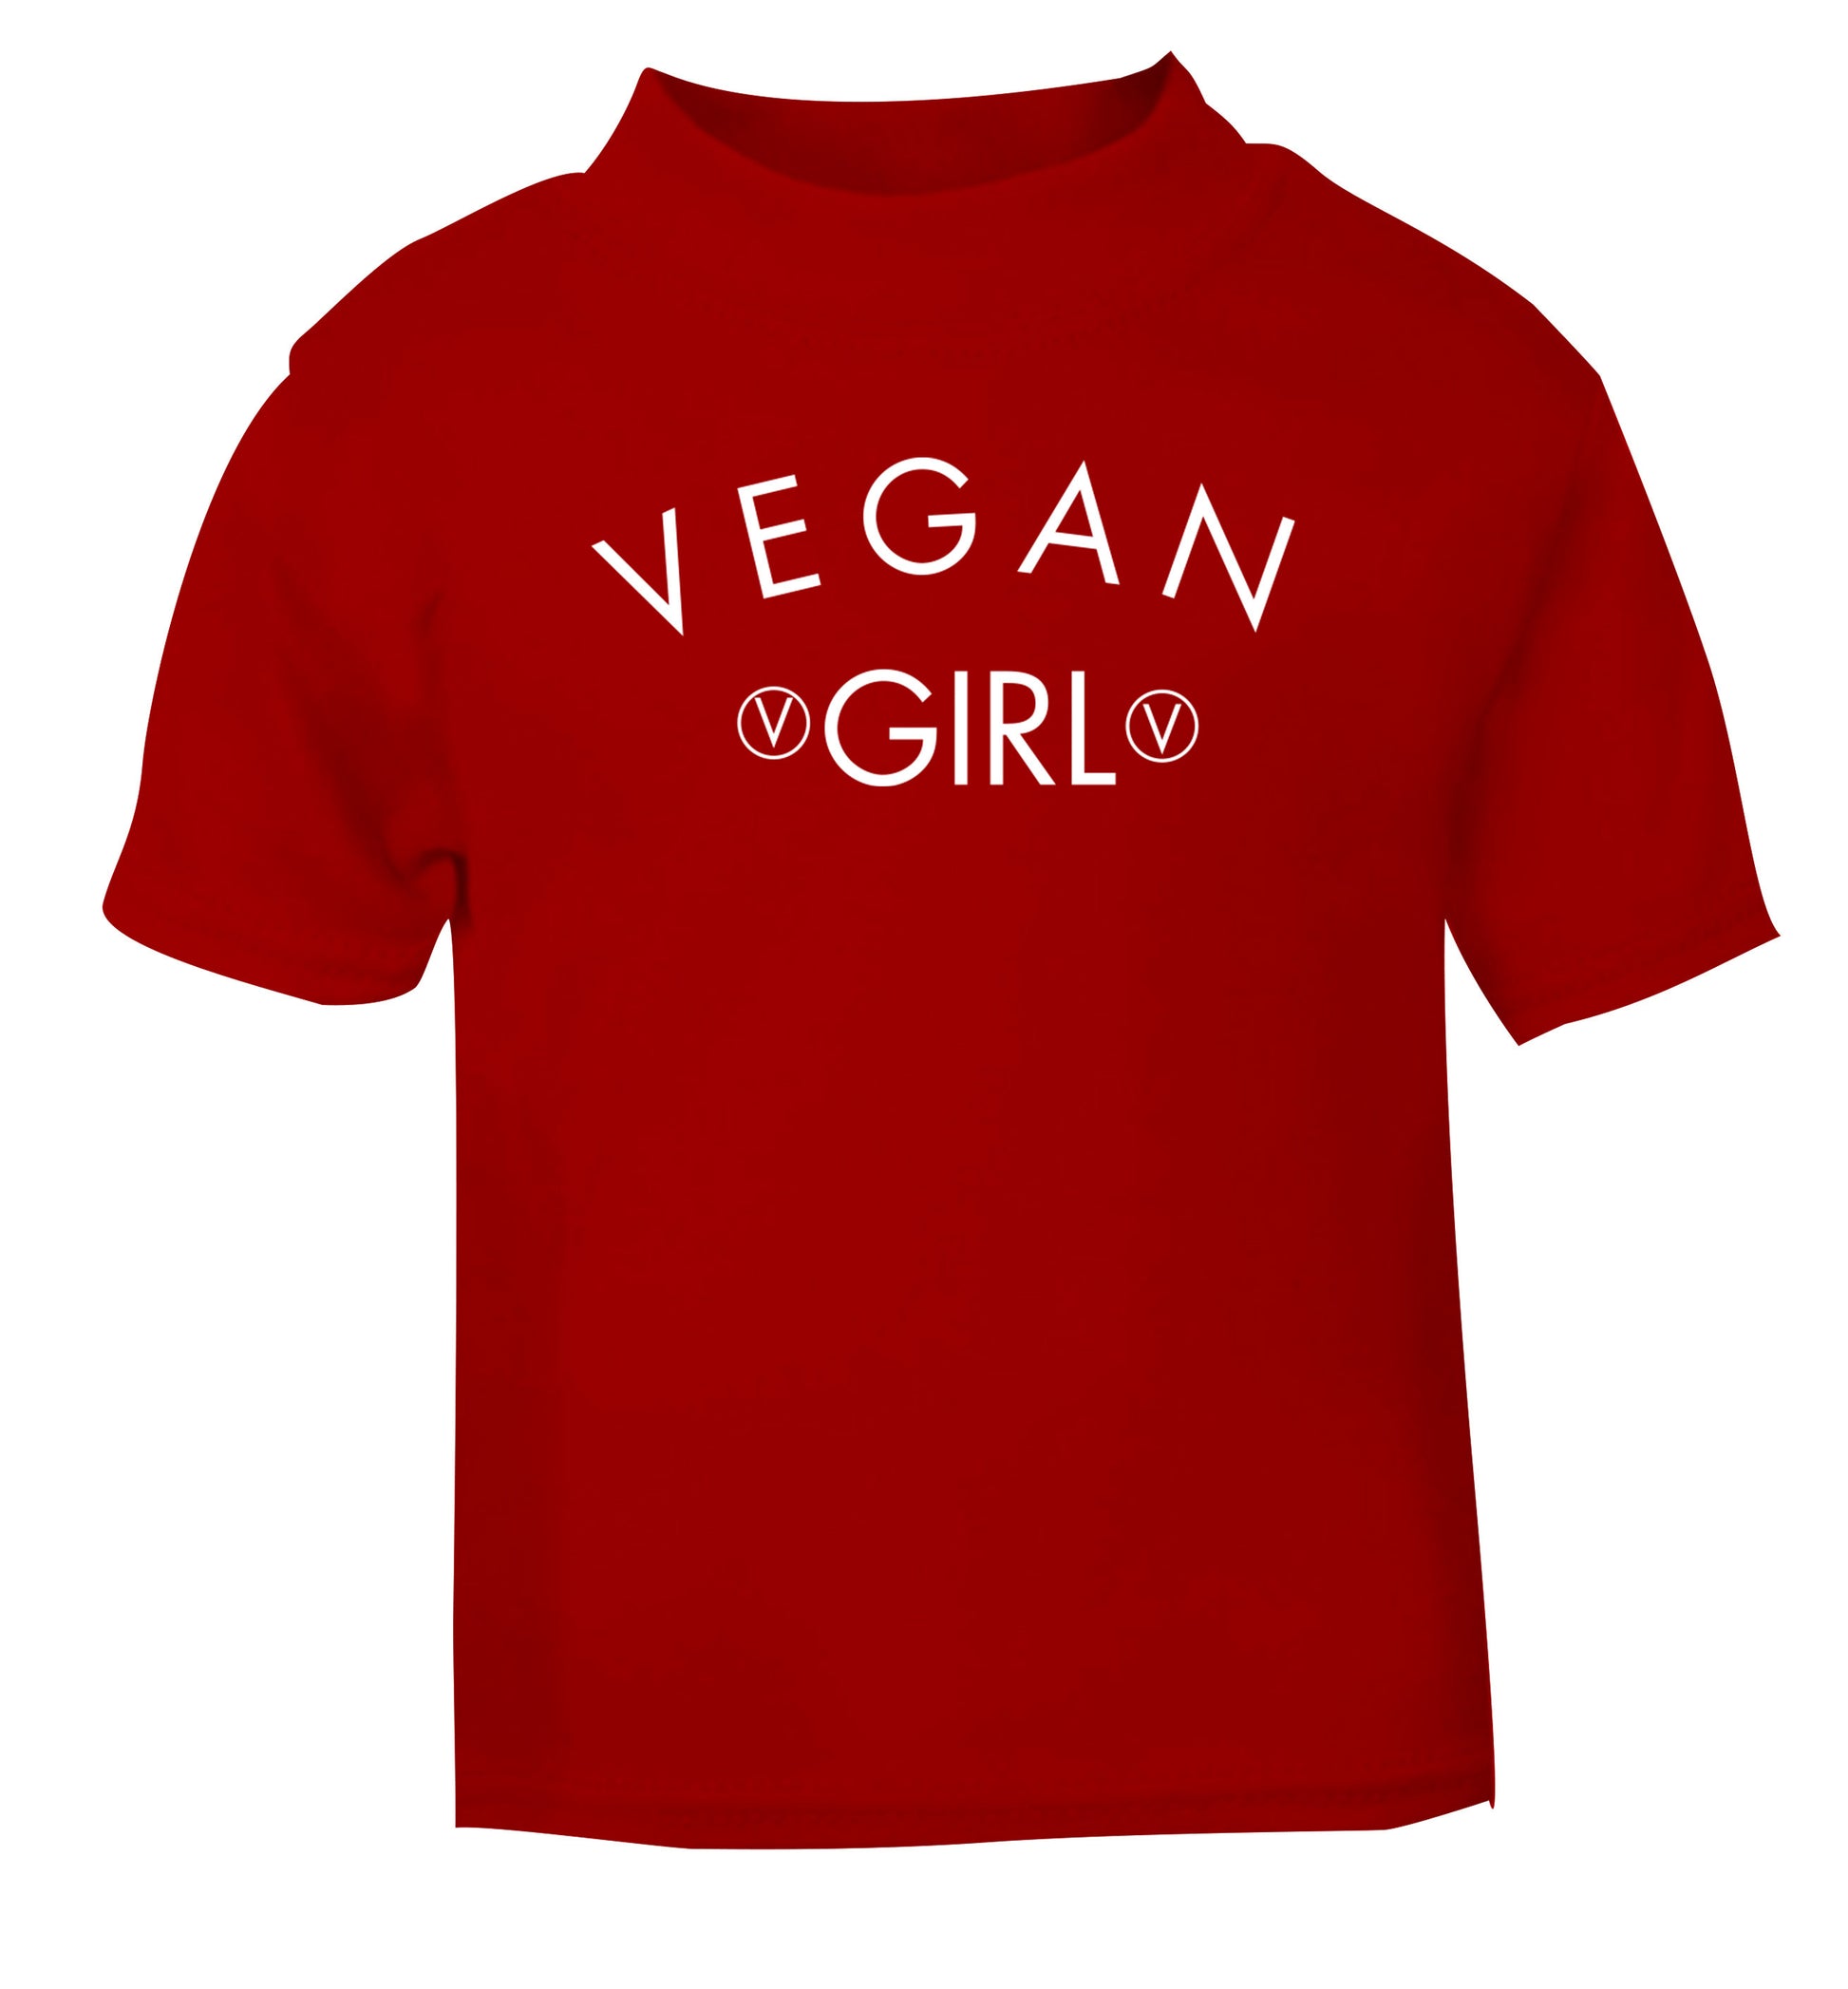 Vegan girl red Baby Toddler Tshirt 2 Years